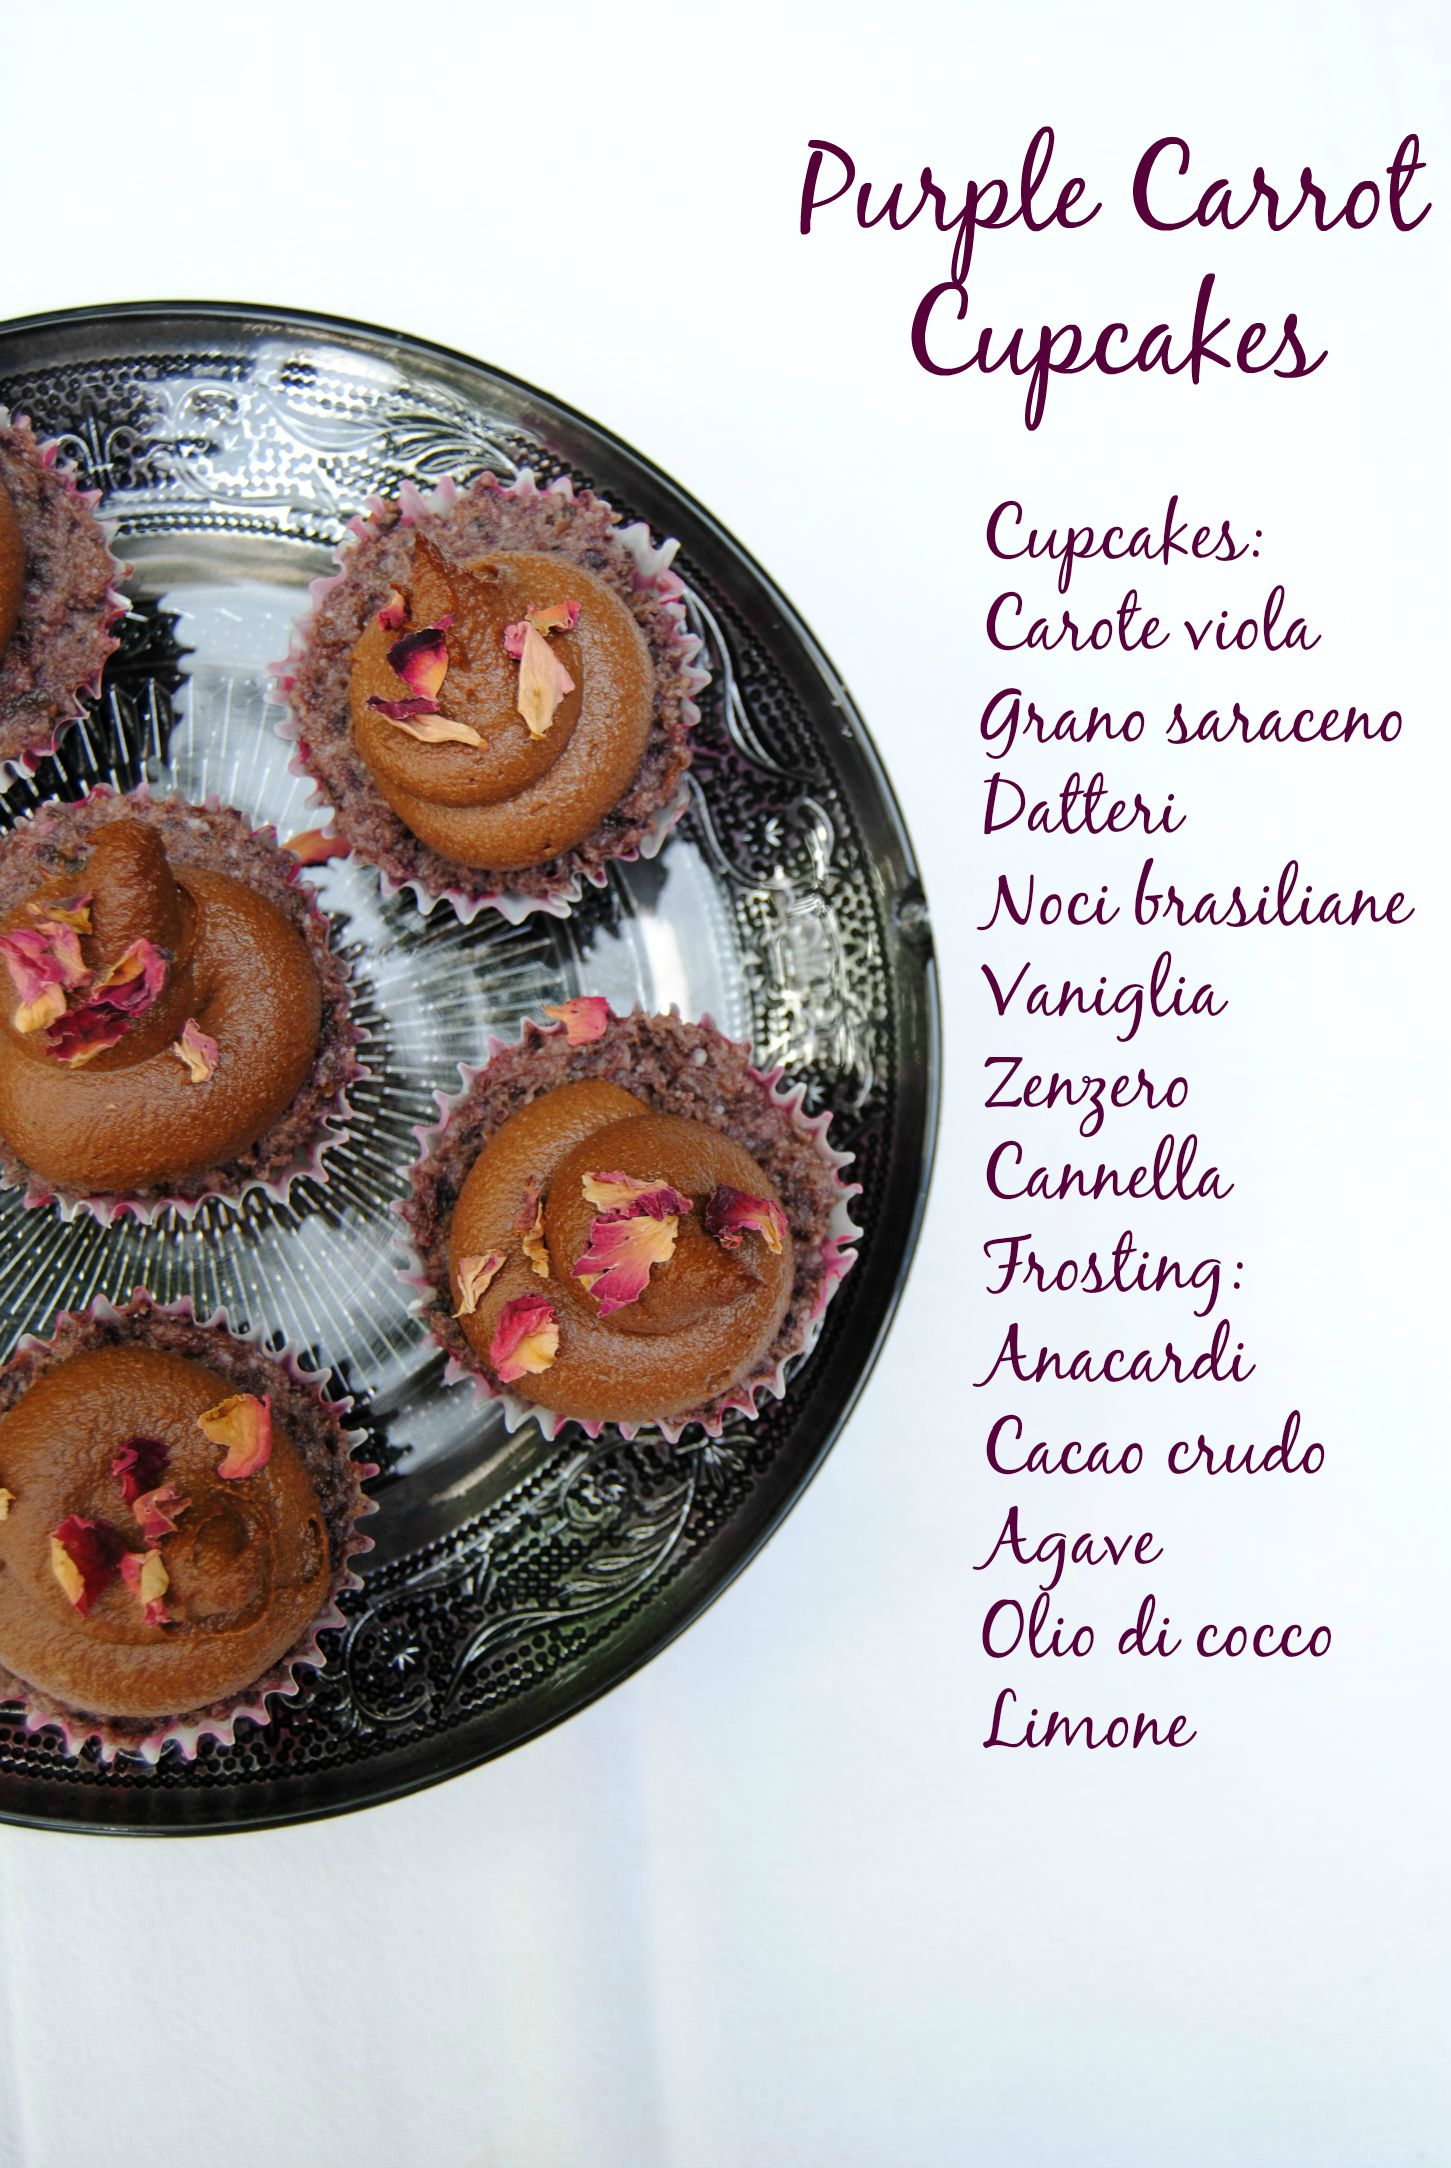 Purple carrot cupcakes crudisti con frosting al cioccolato